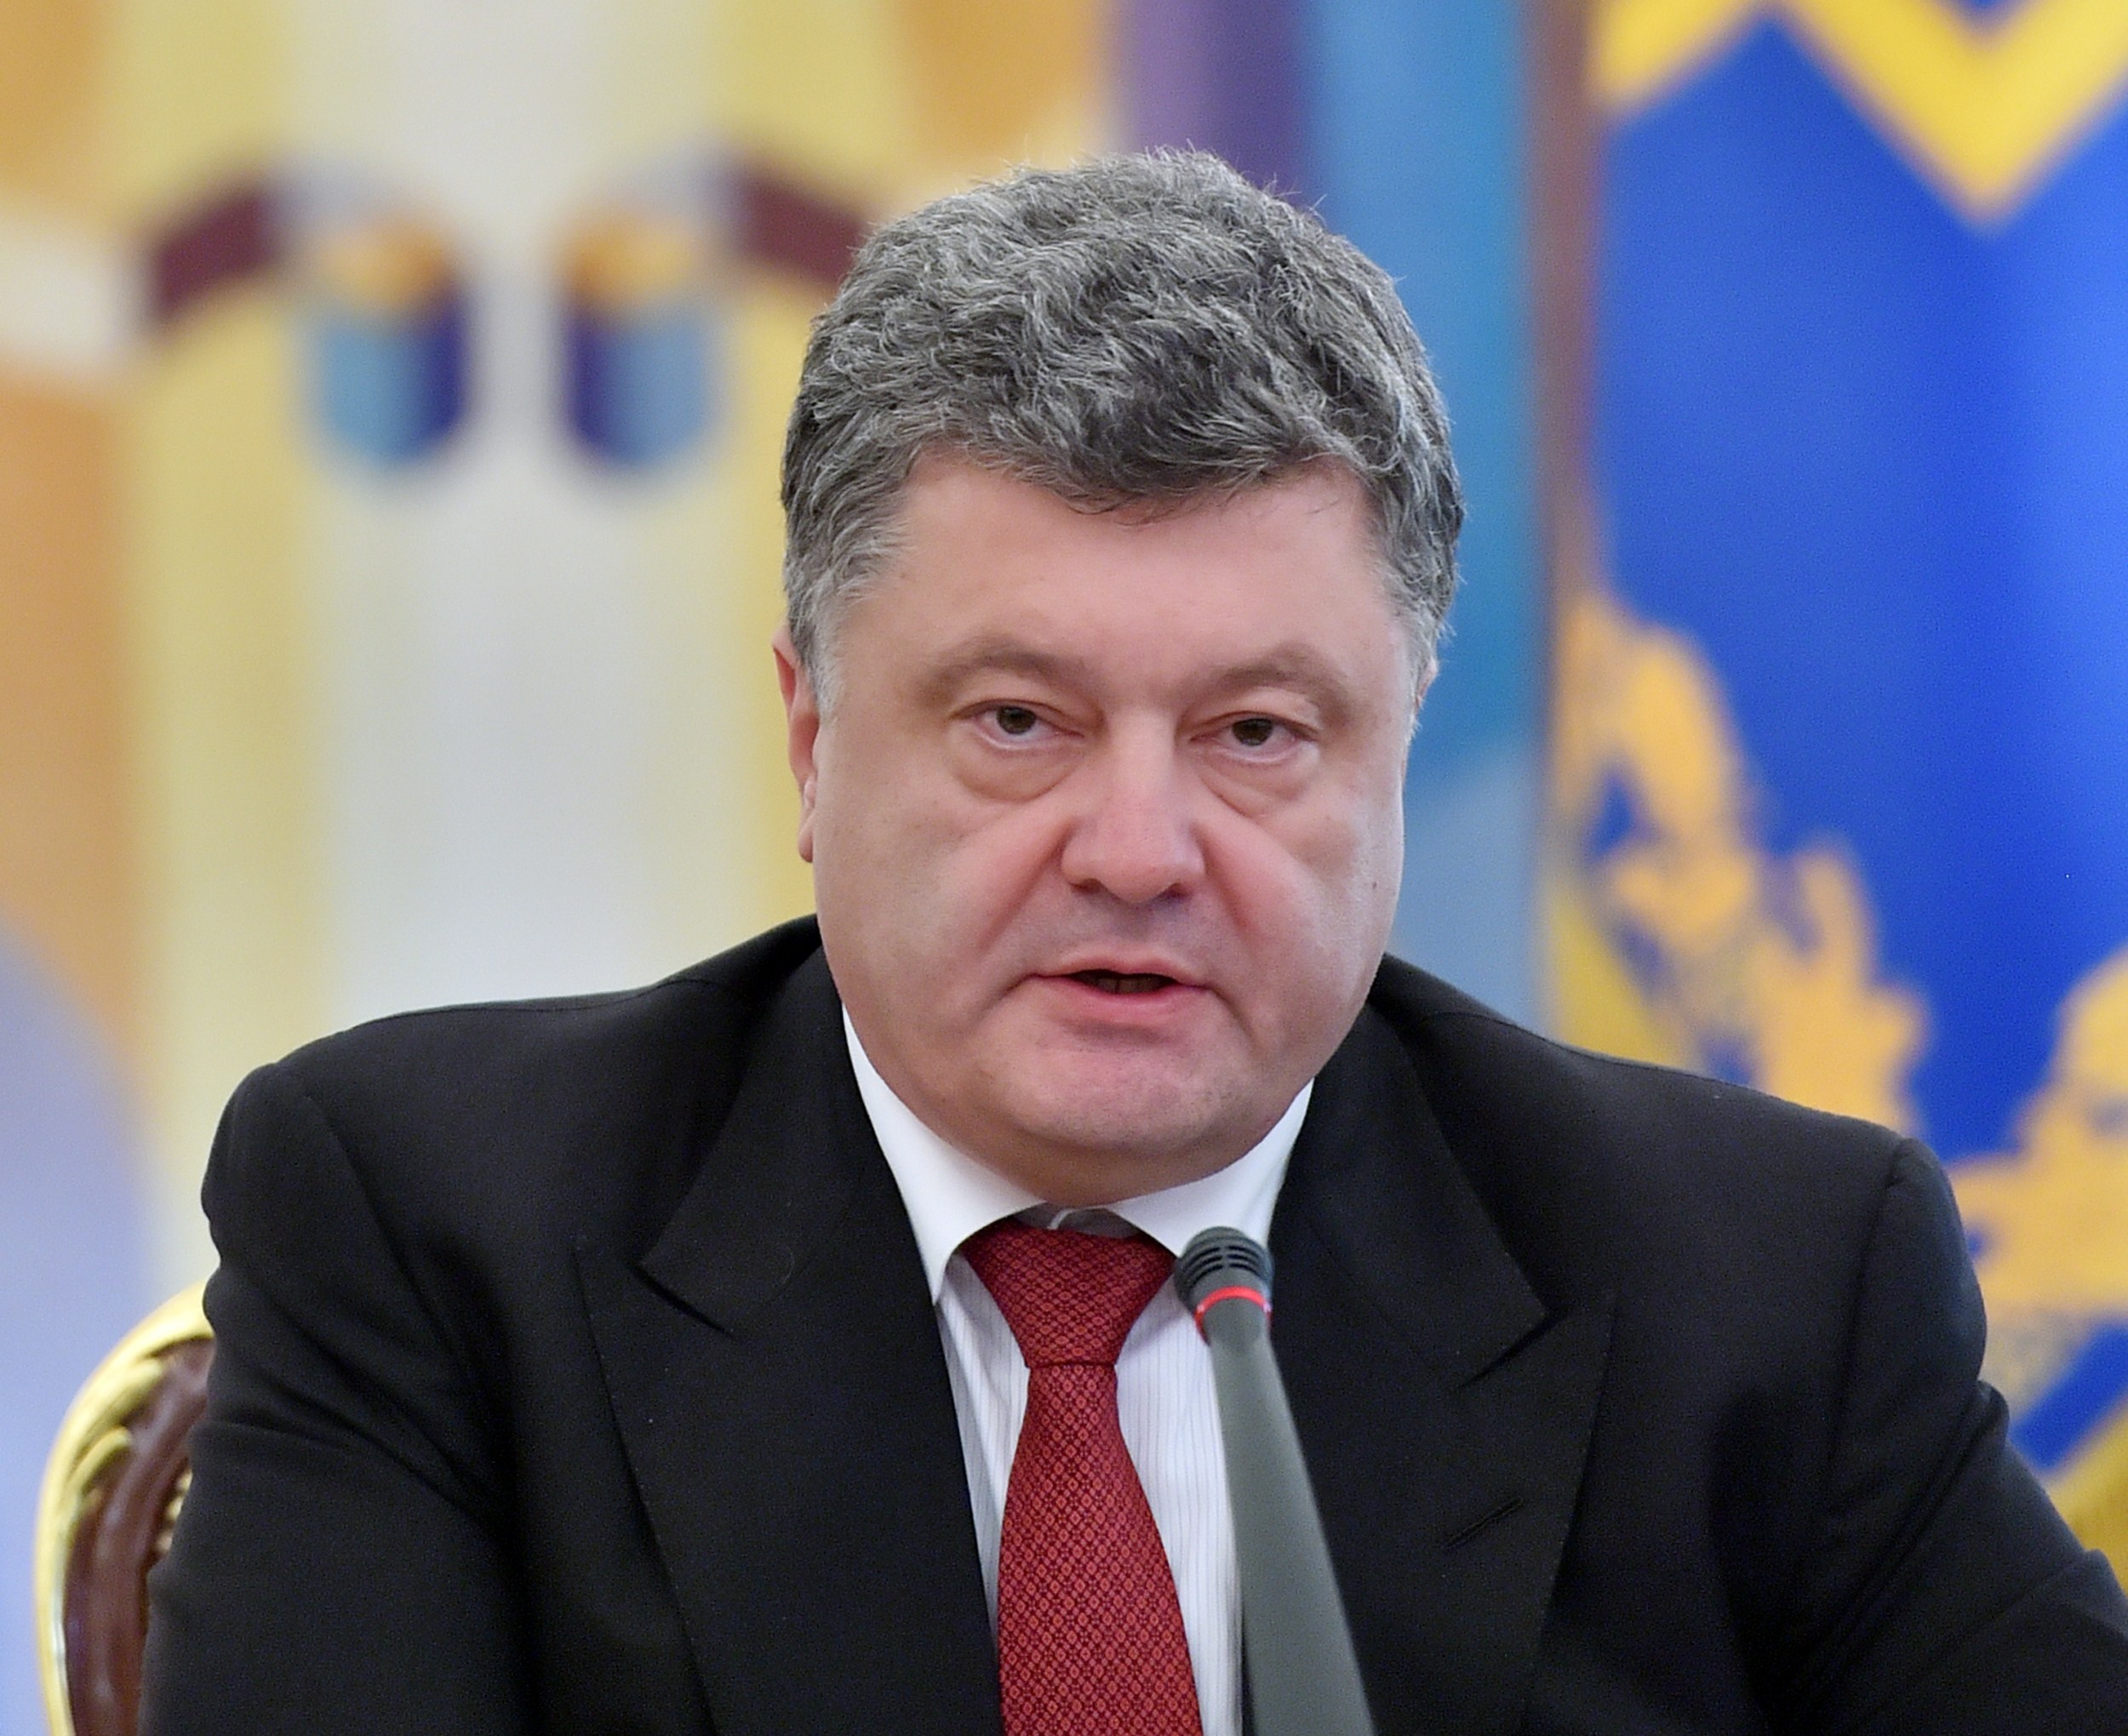 Poroschenko bittet Deutschland und Nato um Hilfe in Krim-Krise